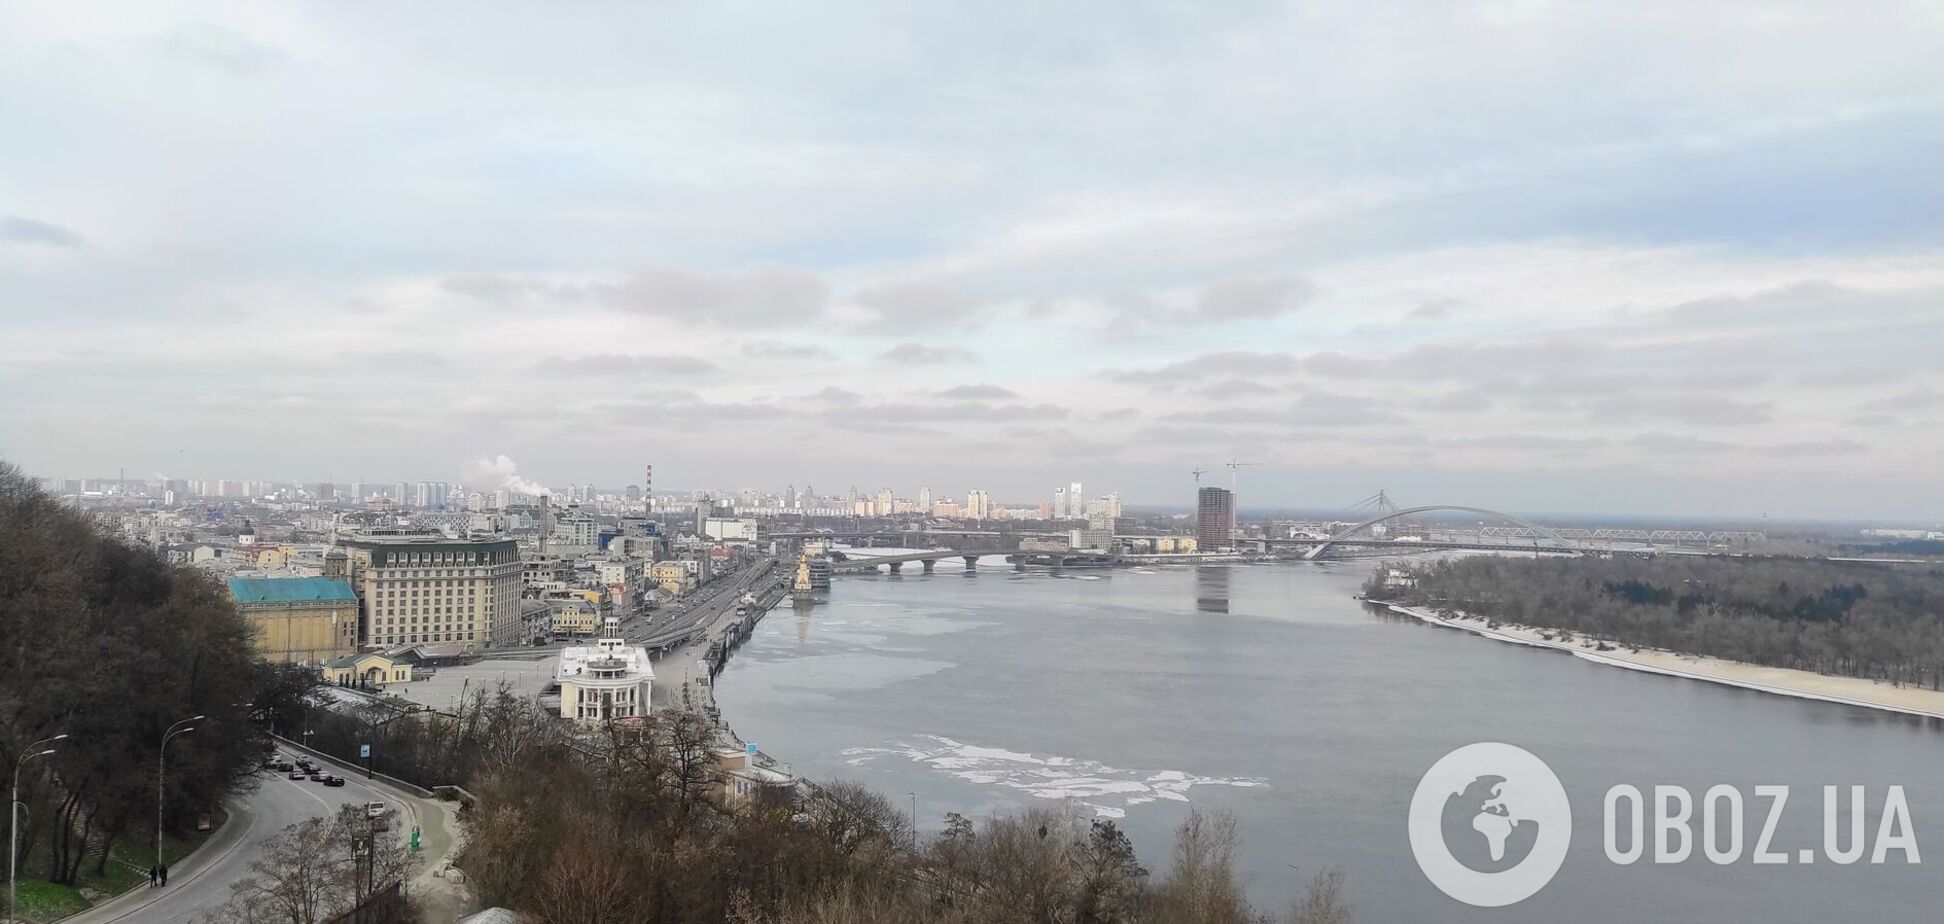 Ця зима стала третьою у рейтингу найтепліших у Києві